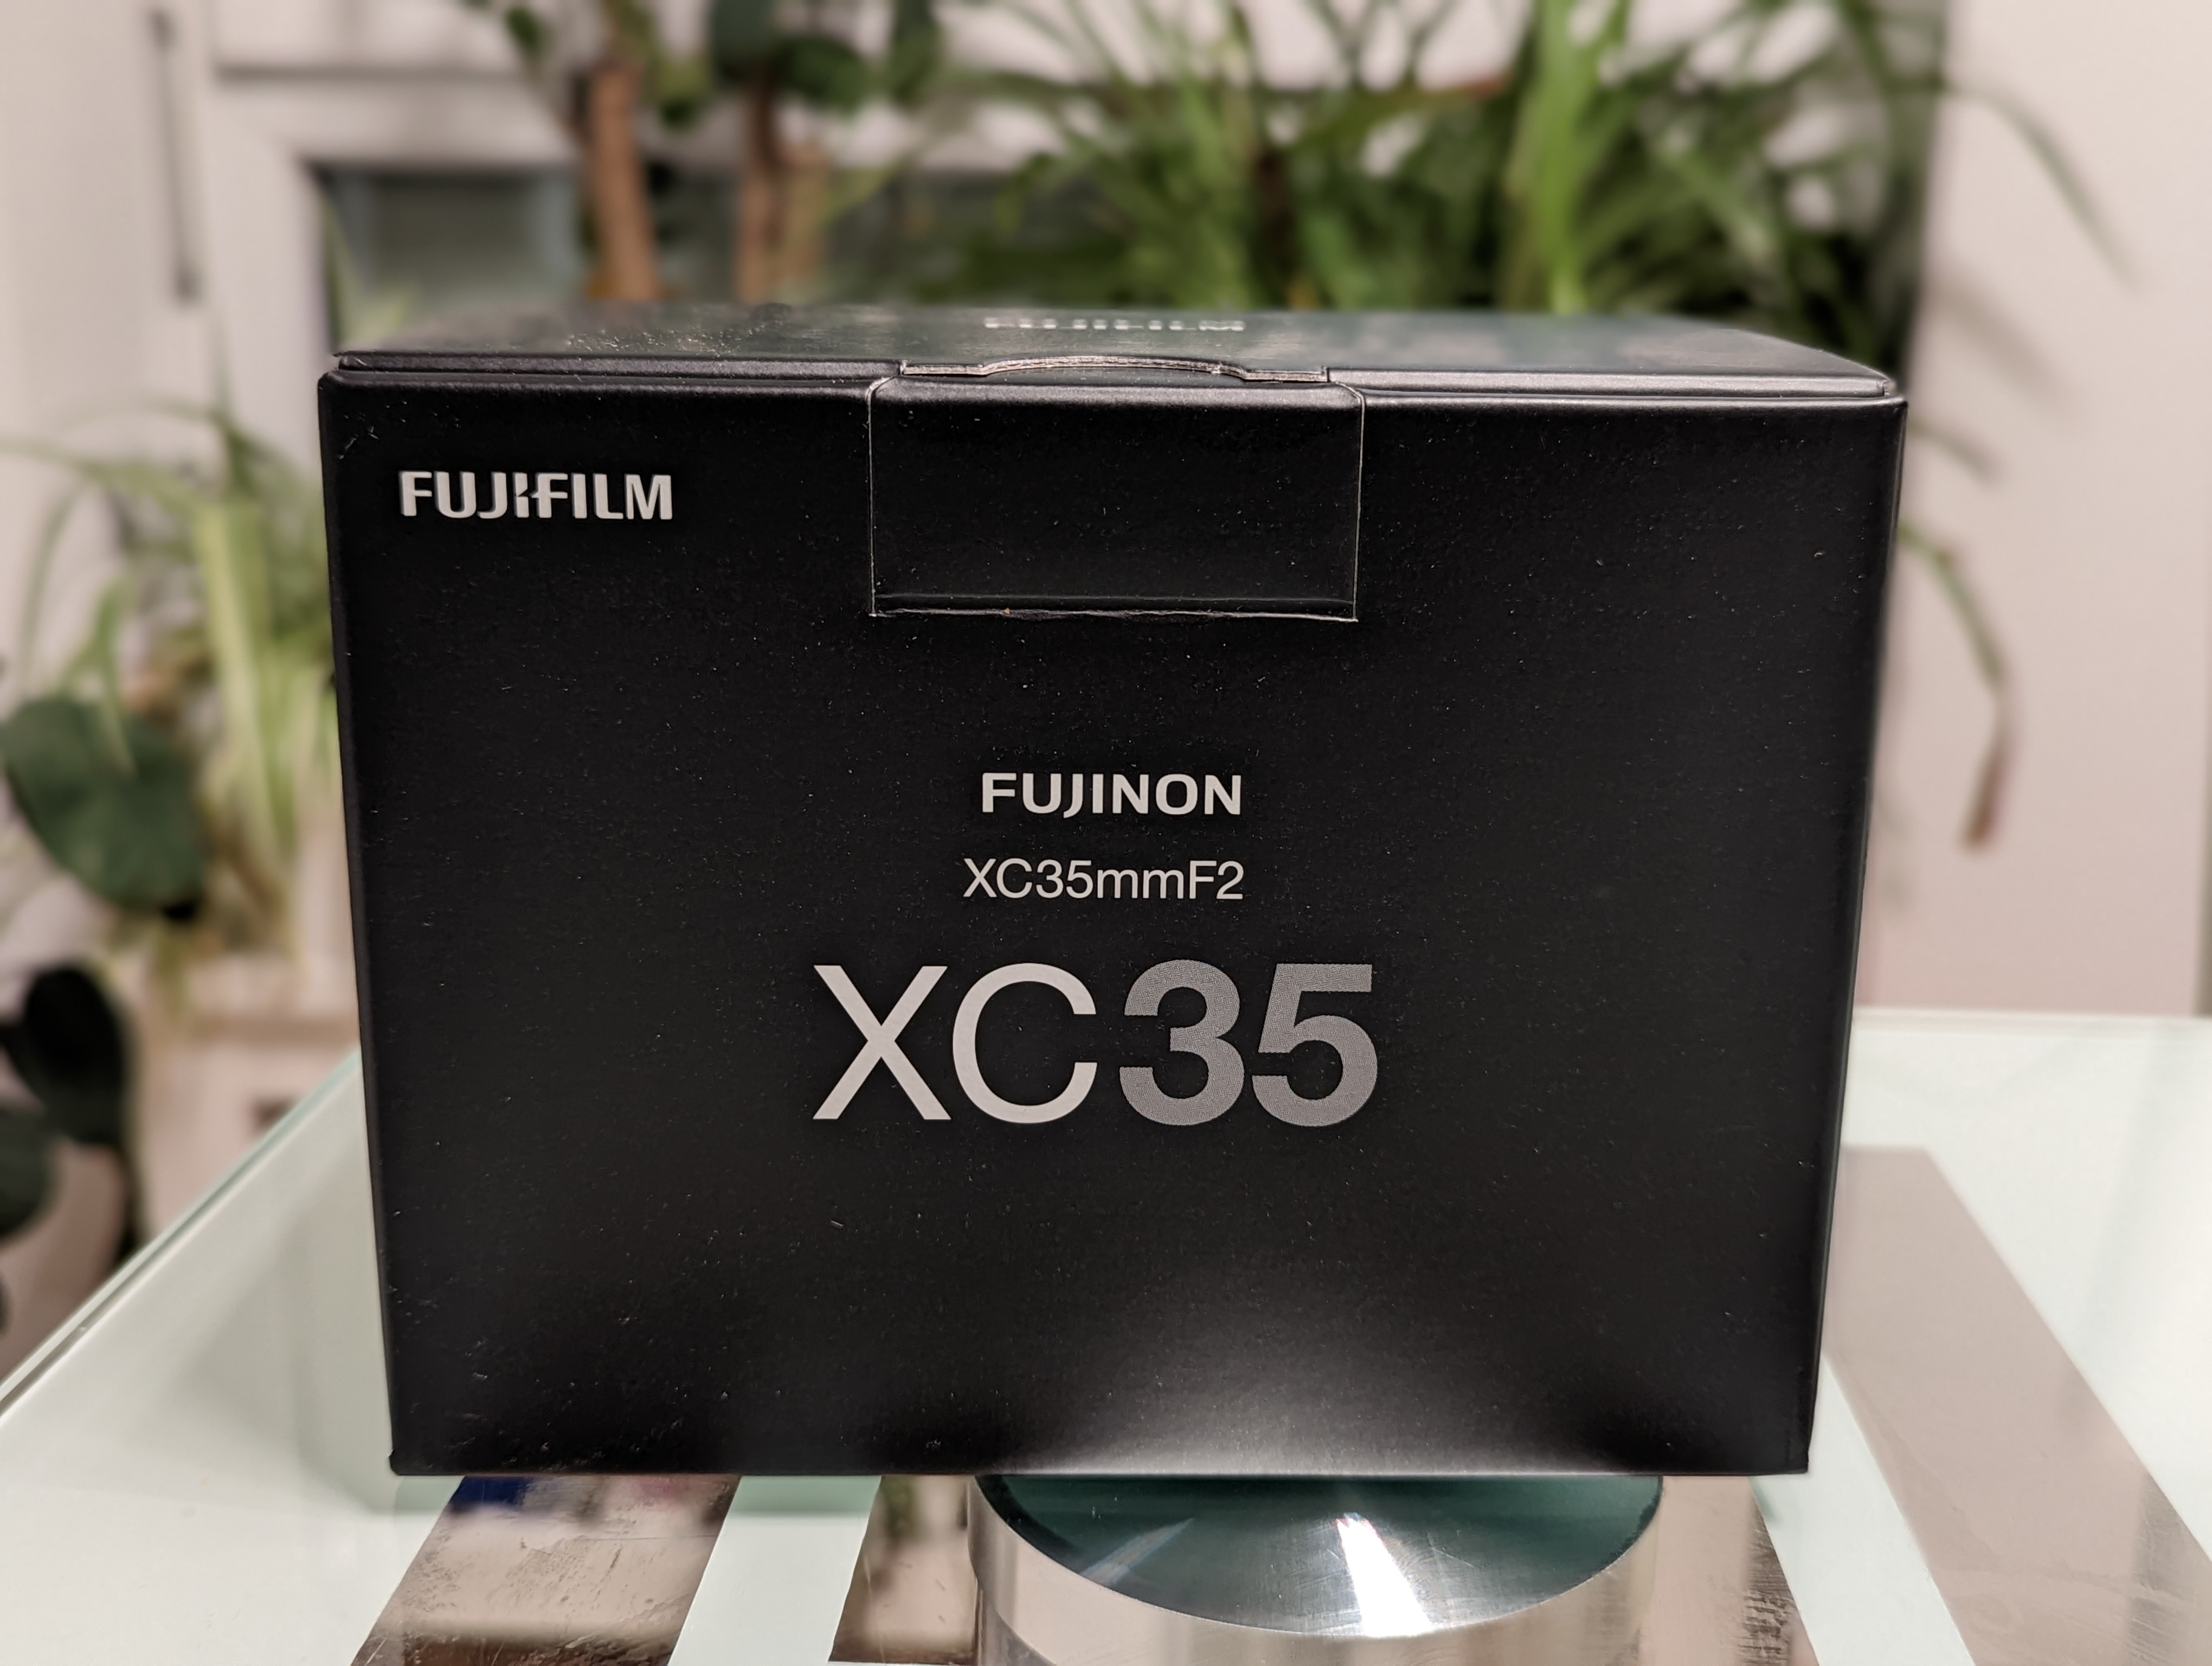 An XC35mmF2 Fujifilm lens